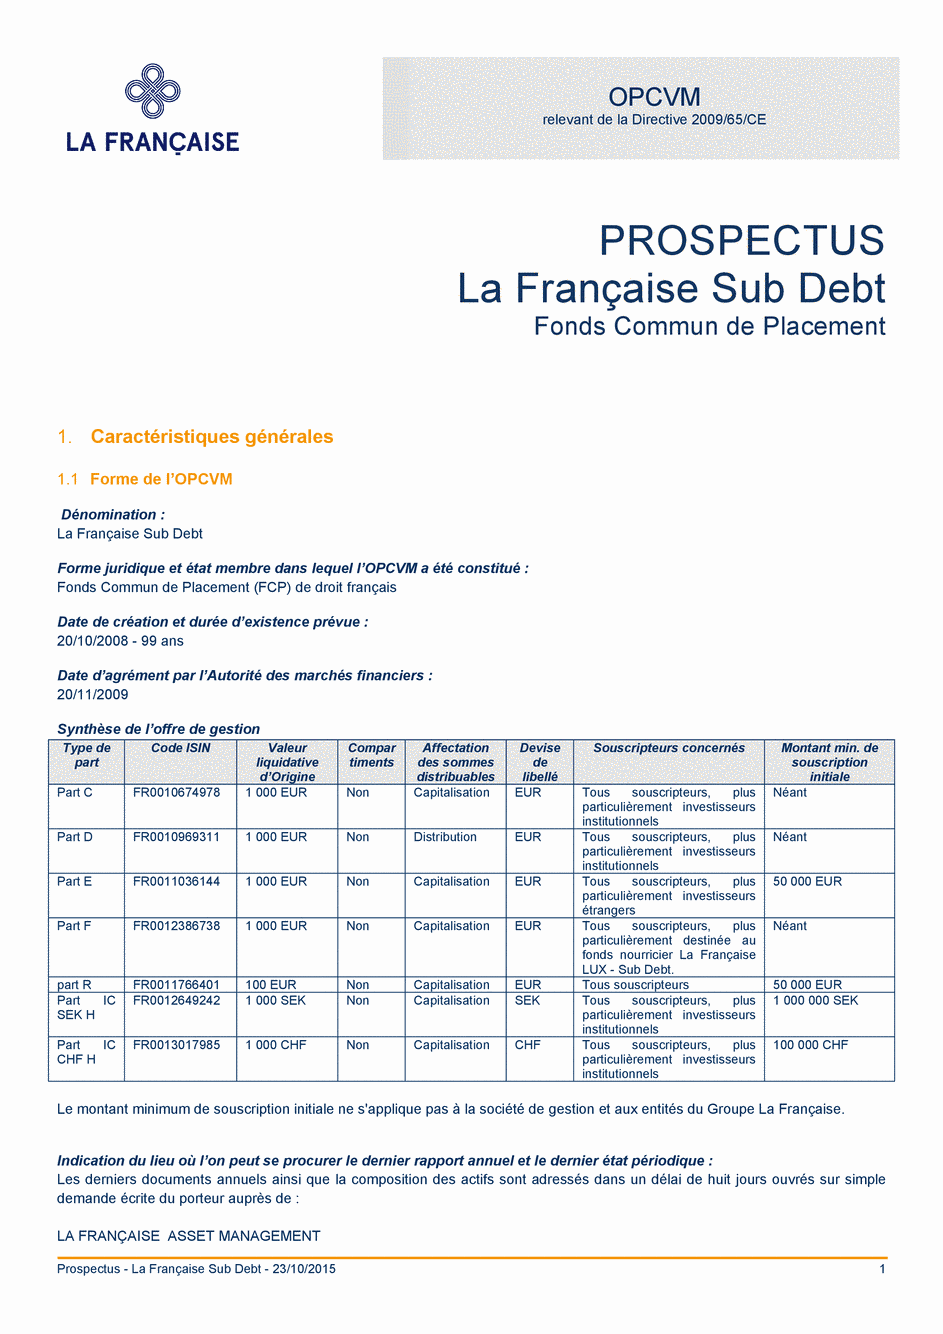 Prospectus La Française Sub Debt - Part IC CHF H - 23/10/2015 - Français